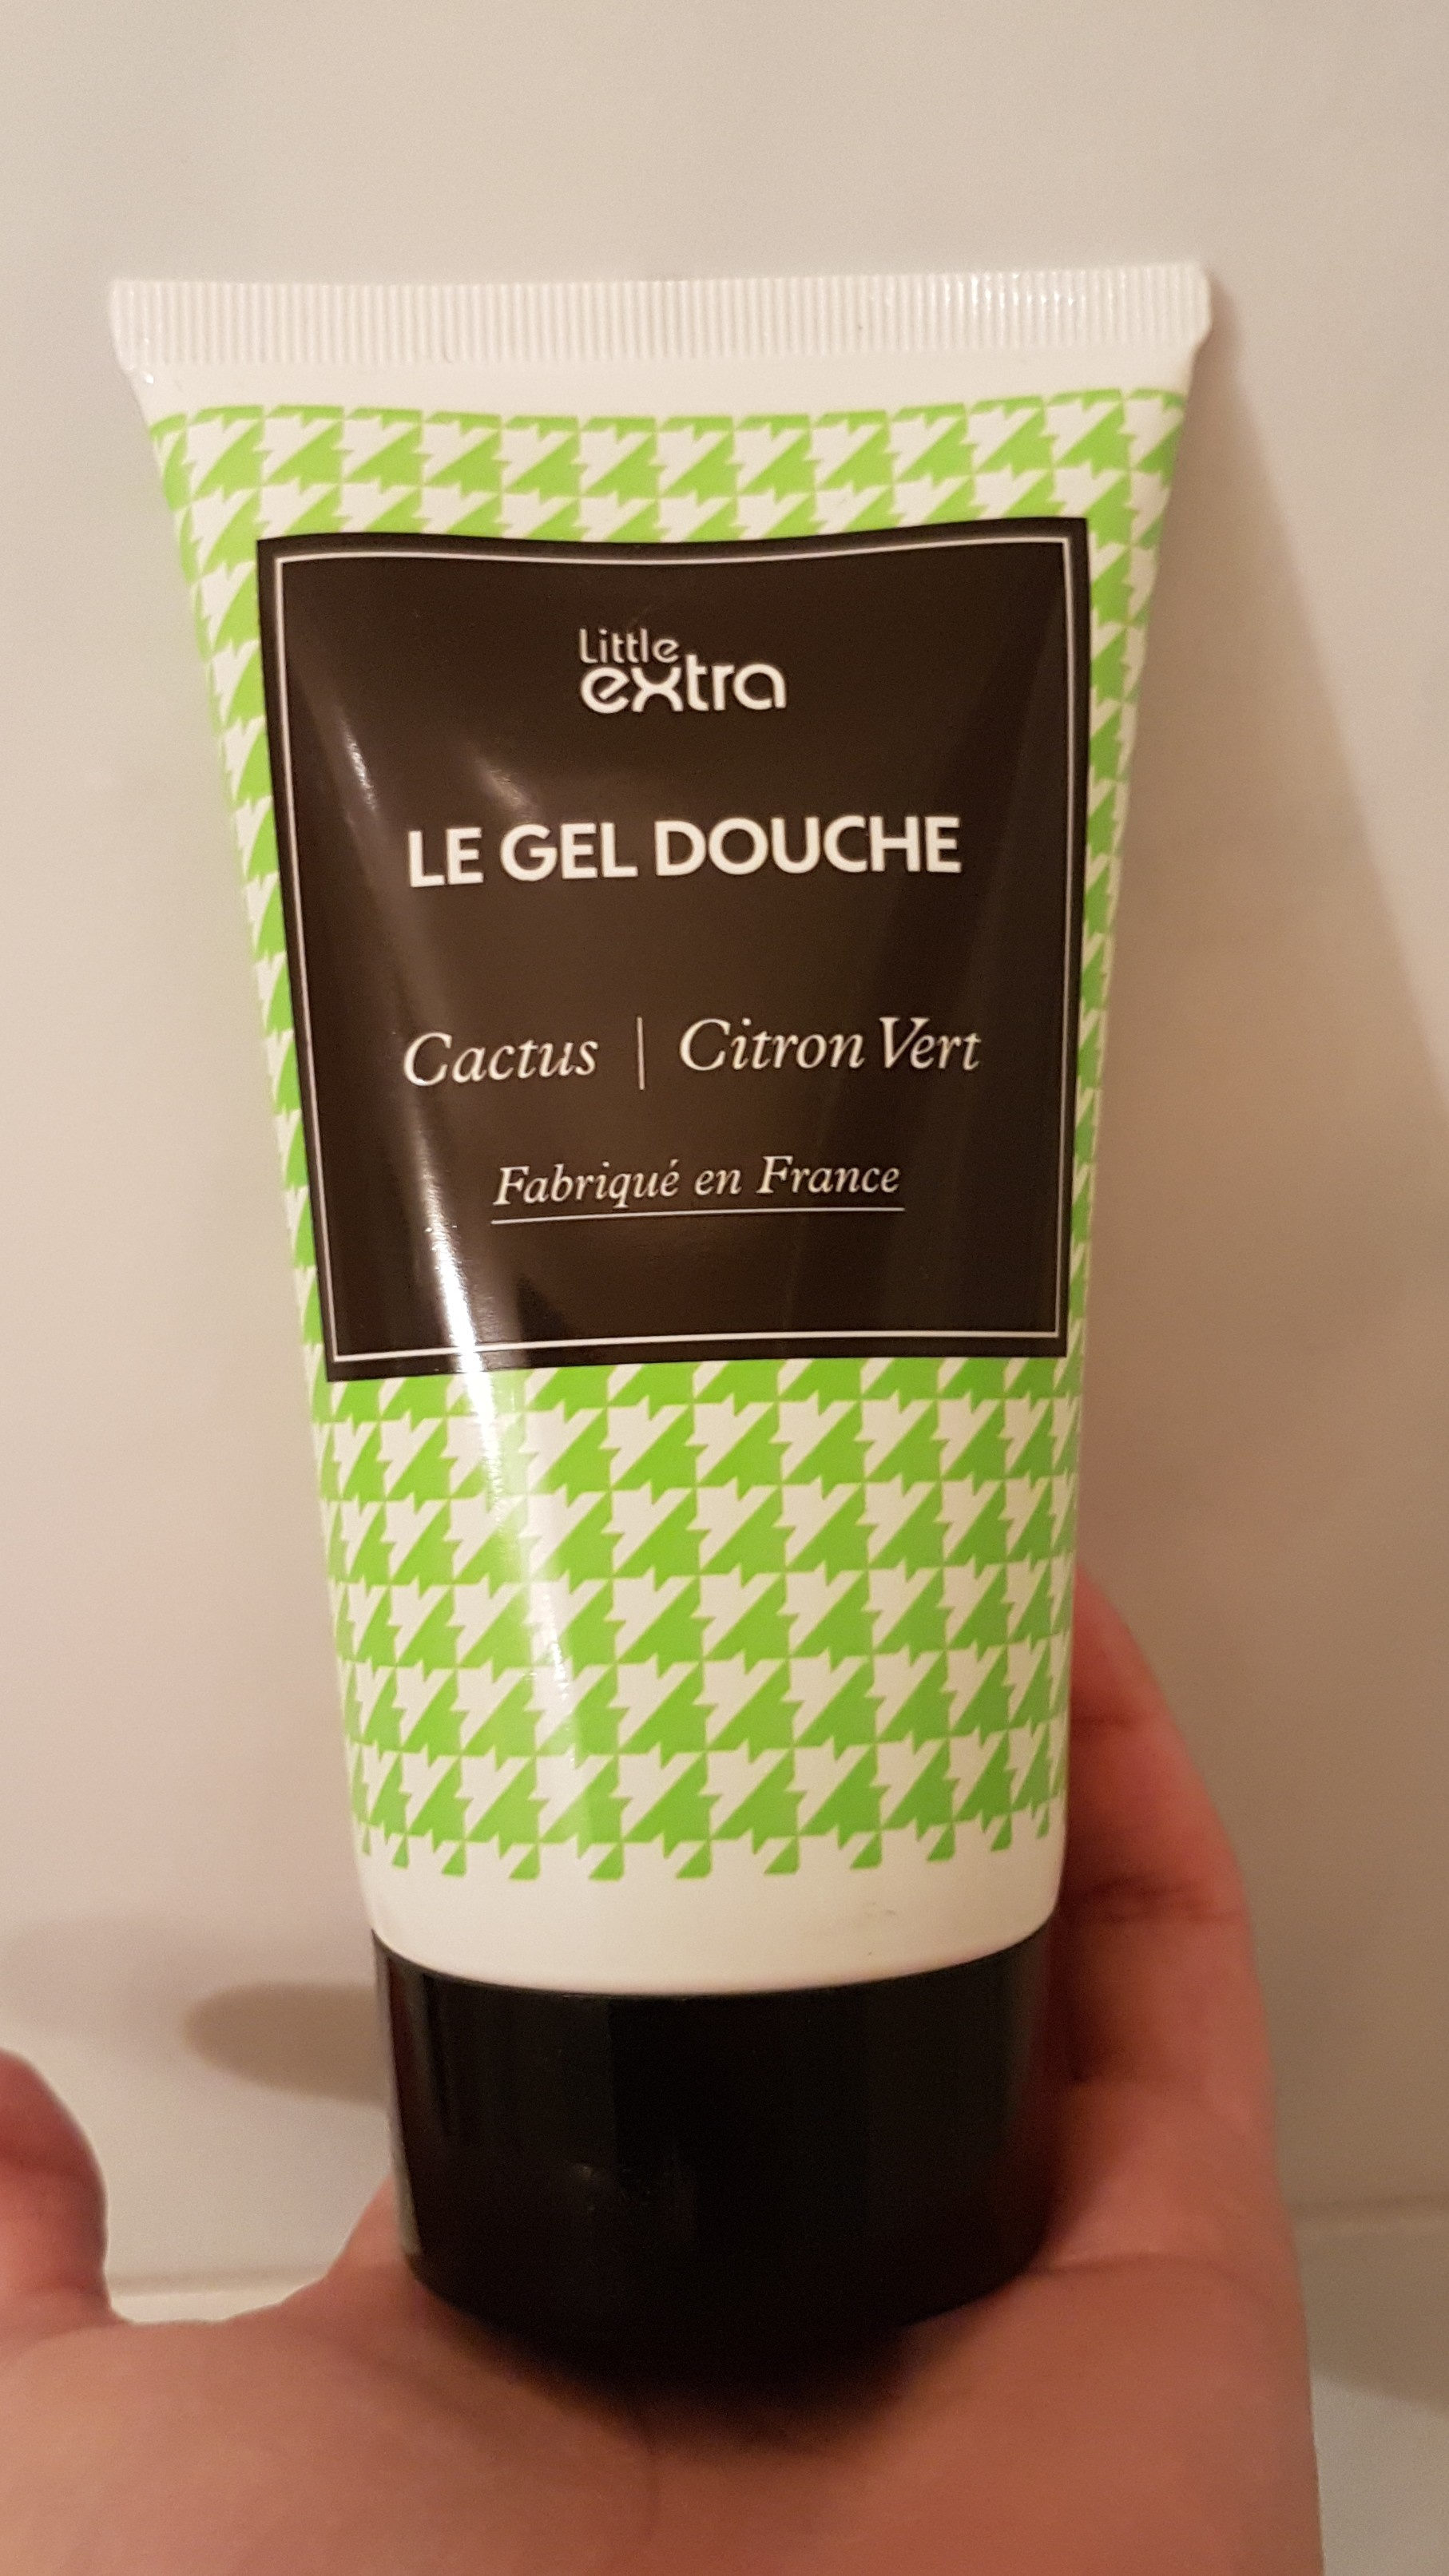 LE GEL DOUCHE Cactus/Citron vert - Product - fr